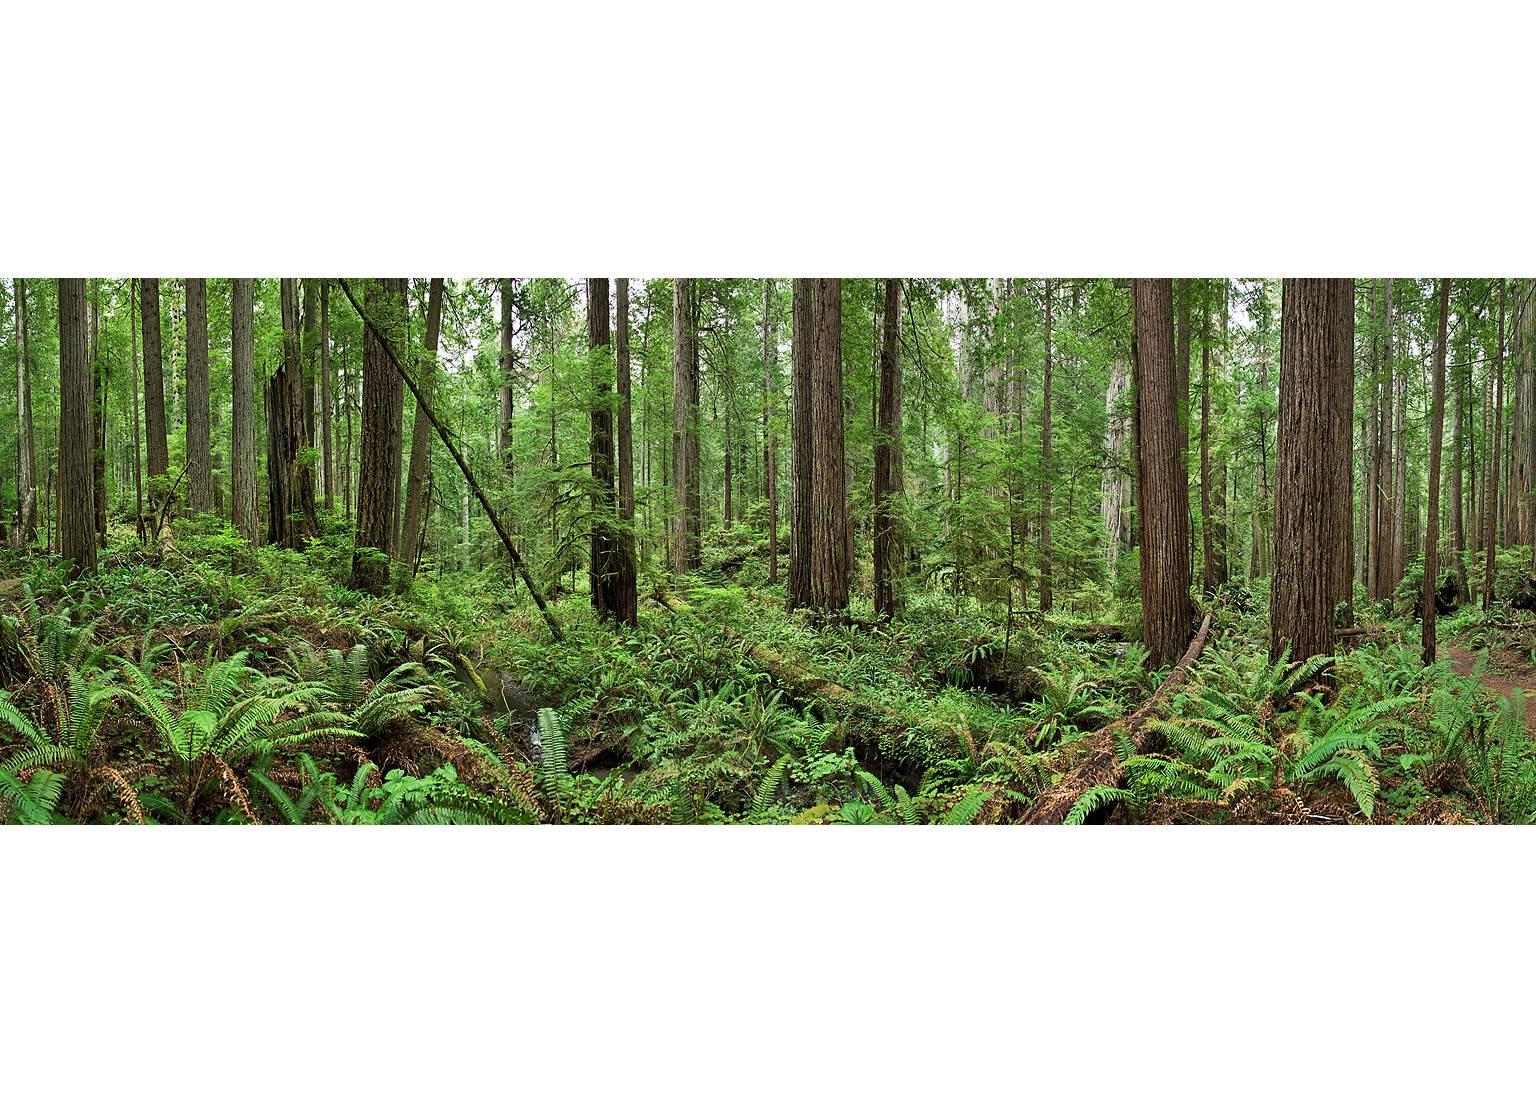 Bois rouges - panorama grand format d'observation de la nature en forêt de bois rouges verts